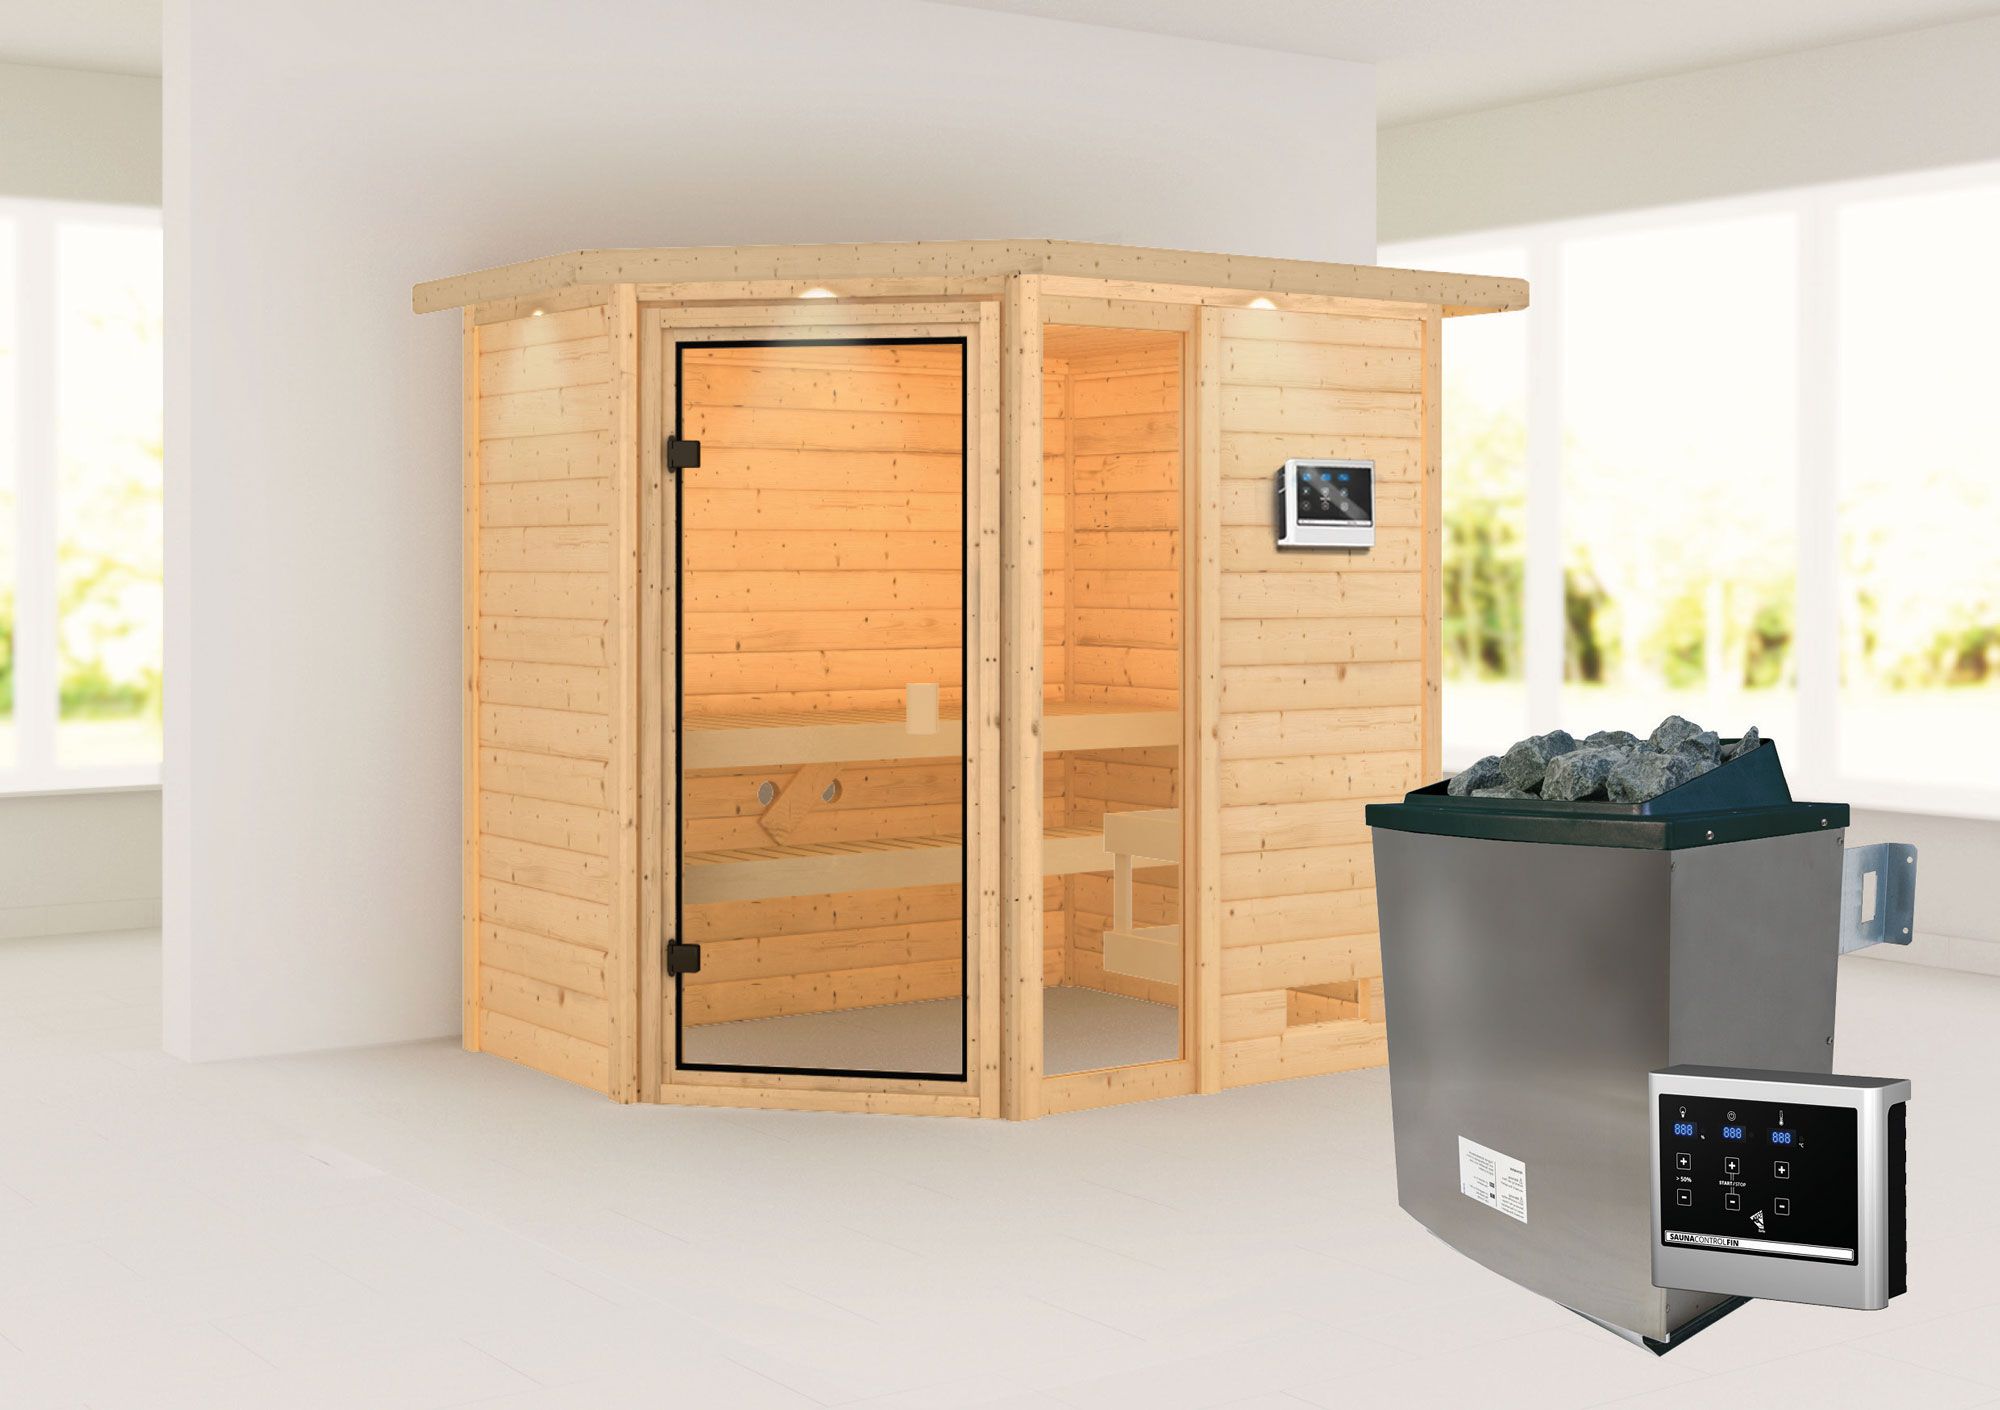 Sauna "Birger" SET mit bronzierter Tür und Kranz - Farbe: Natur, Ofen externe Steuerung easy 9 kW - 224 x 160 x 191 cm (B x T x H)